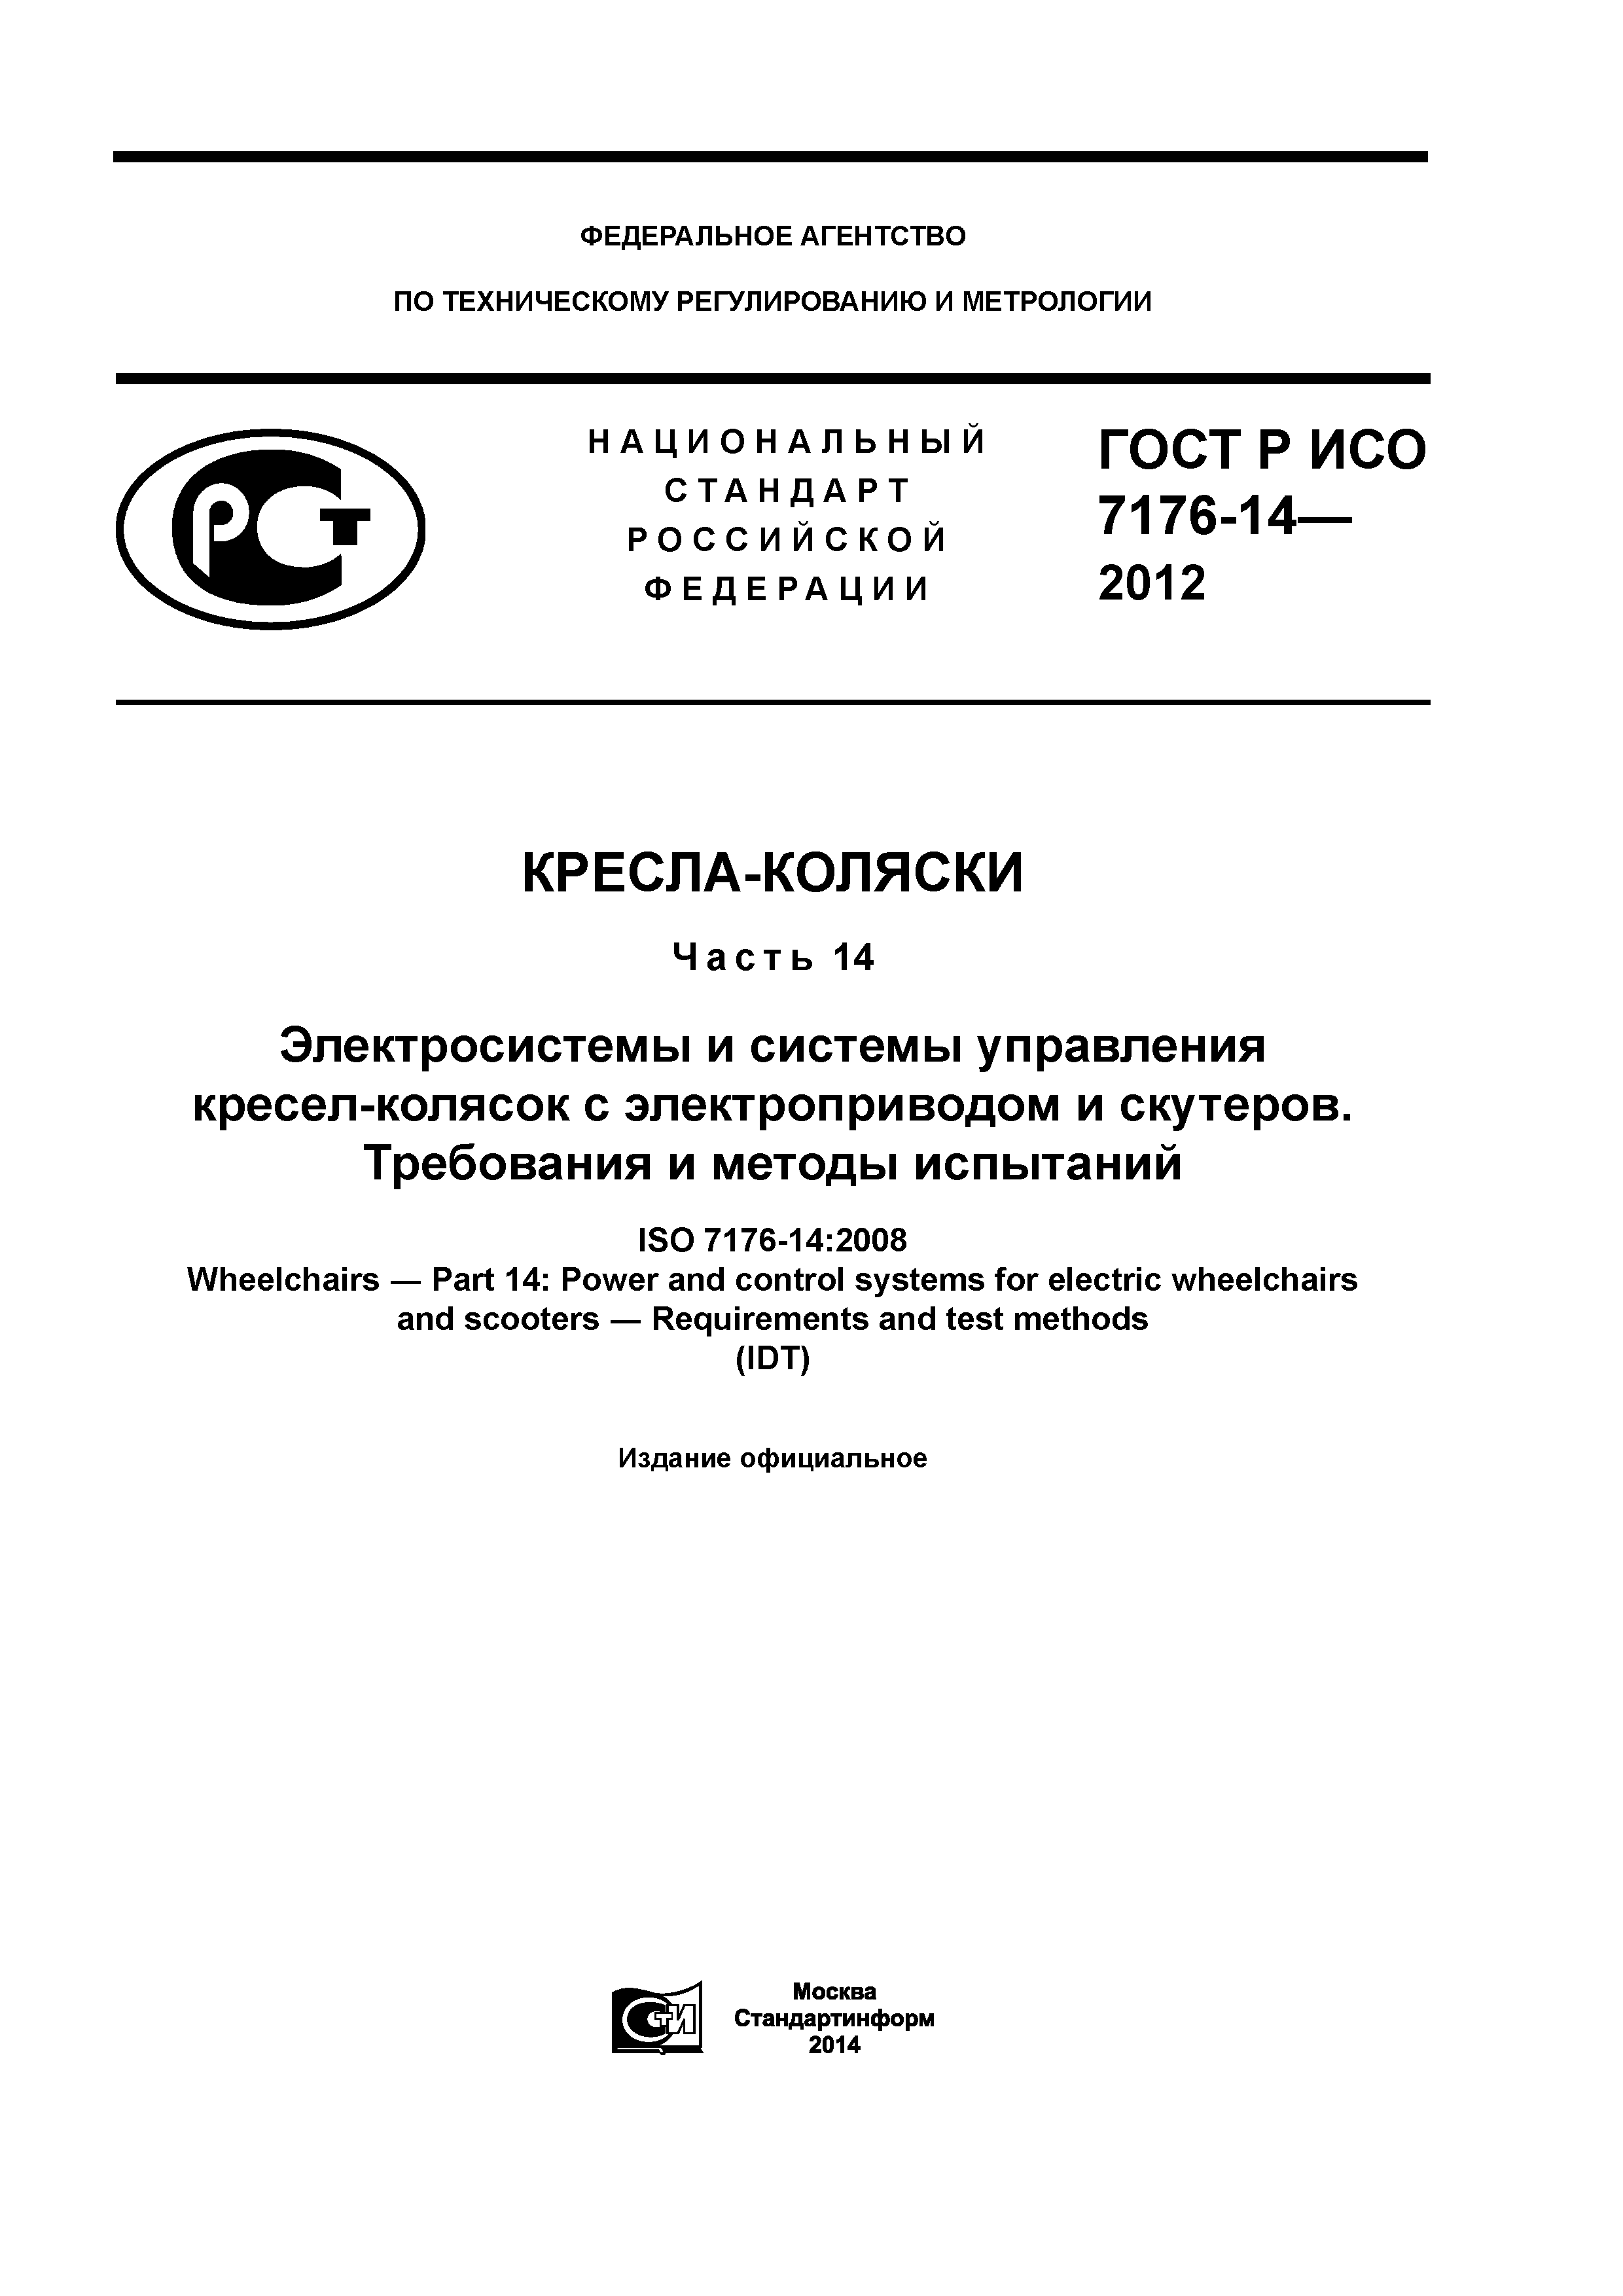 ГОСТ Р ИСО 7176-14-2012